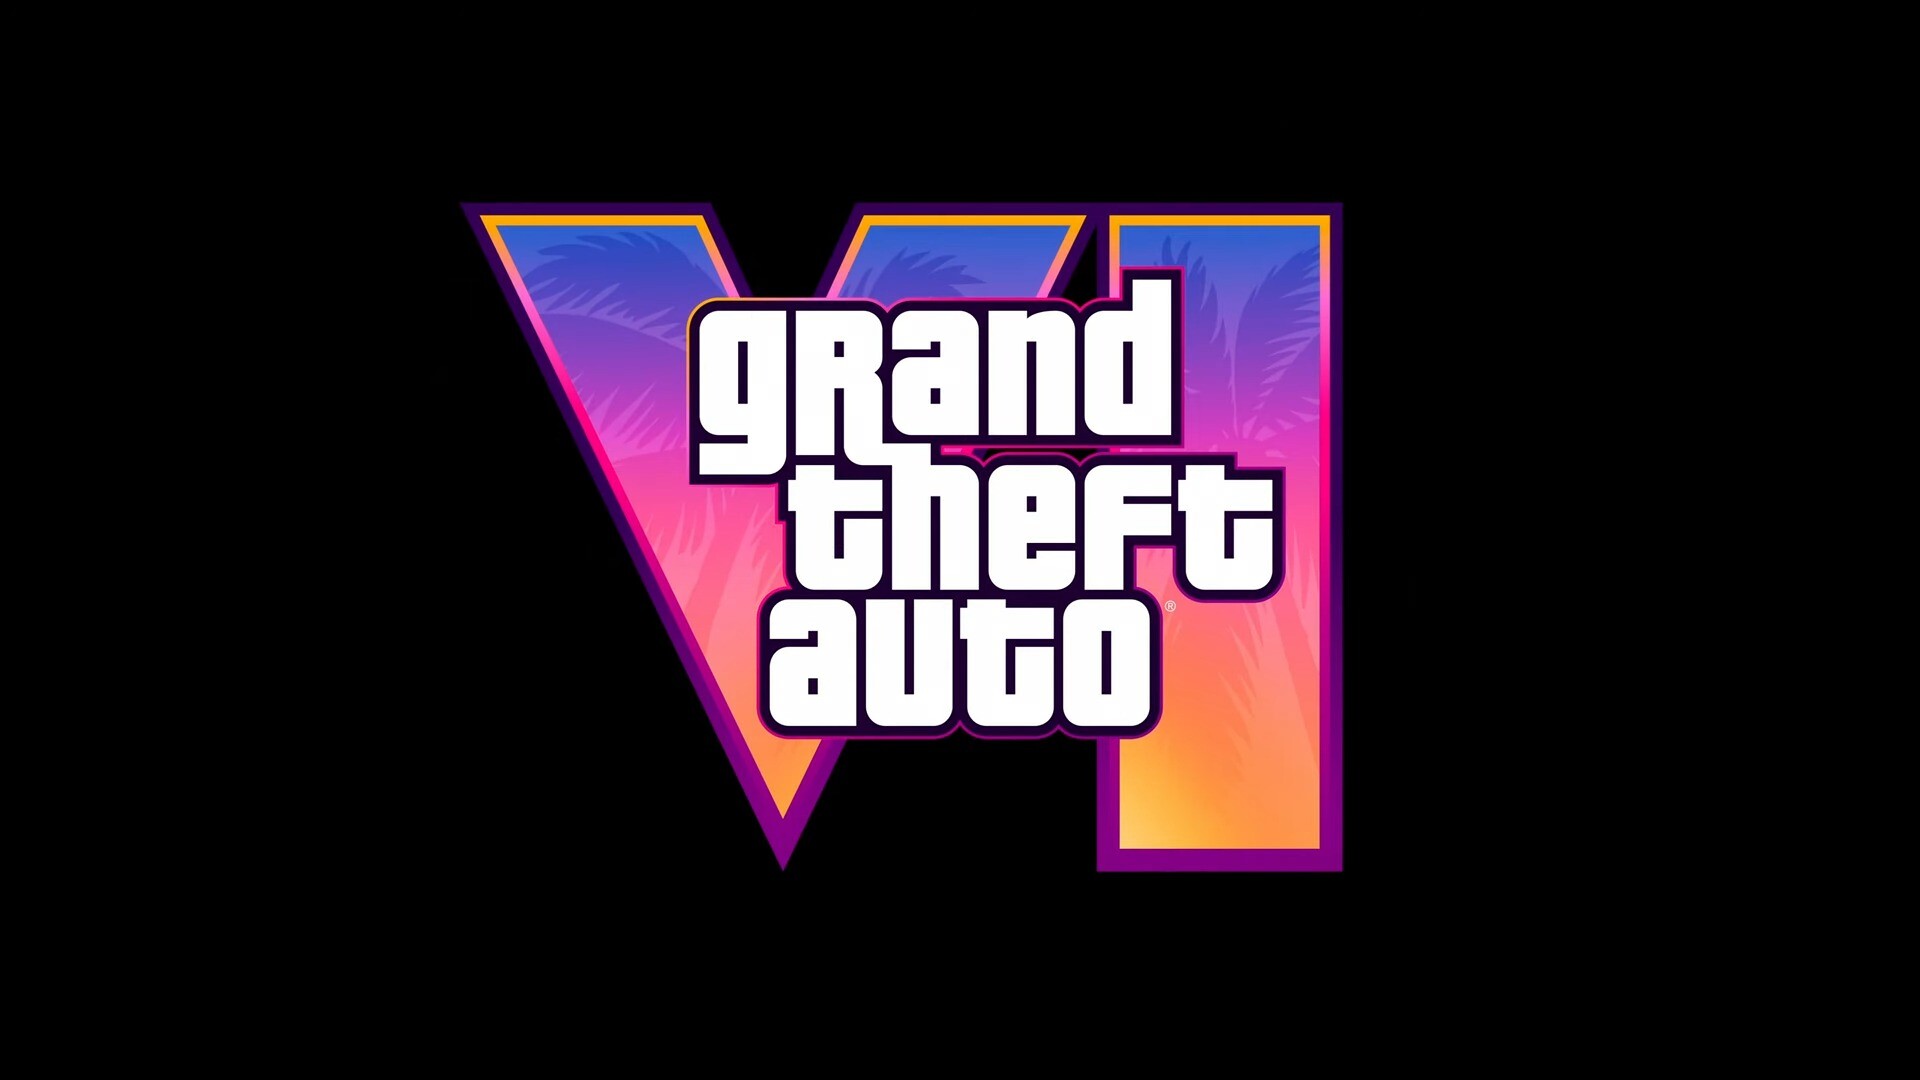 Появились первые сравнения Grand Theft Auto VI c Grand Theft Auto V и реальными локациями: с сайта NEWXBOXONE.RU